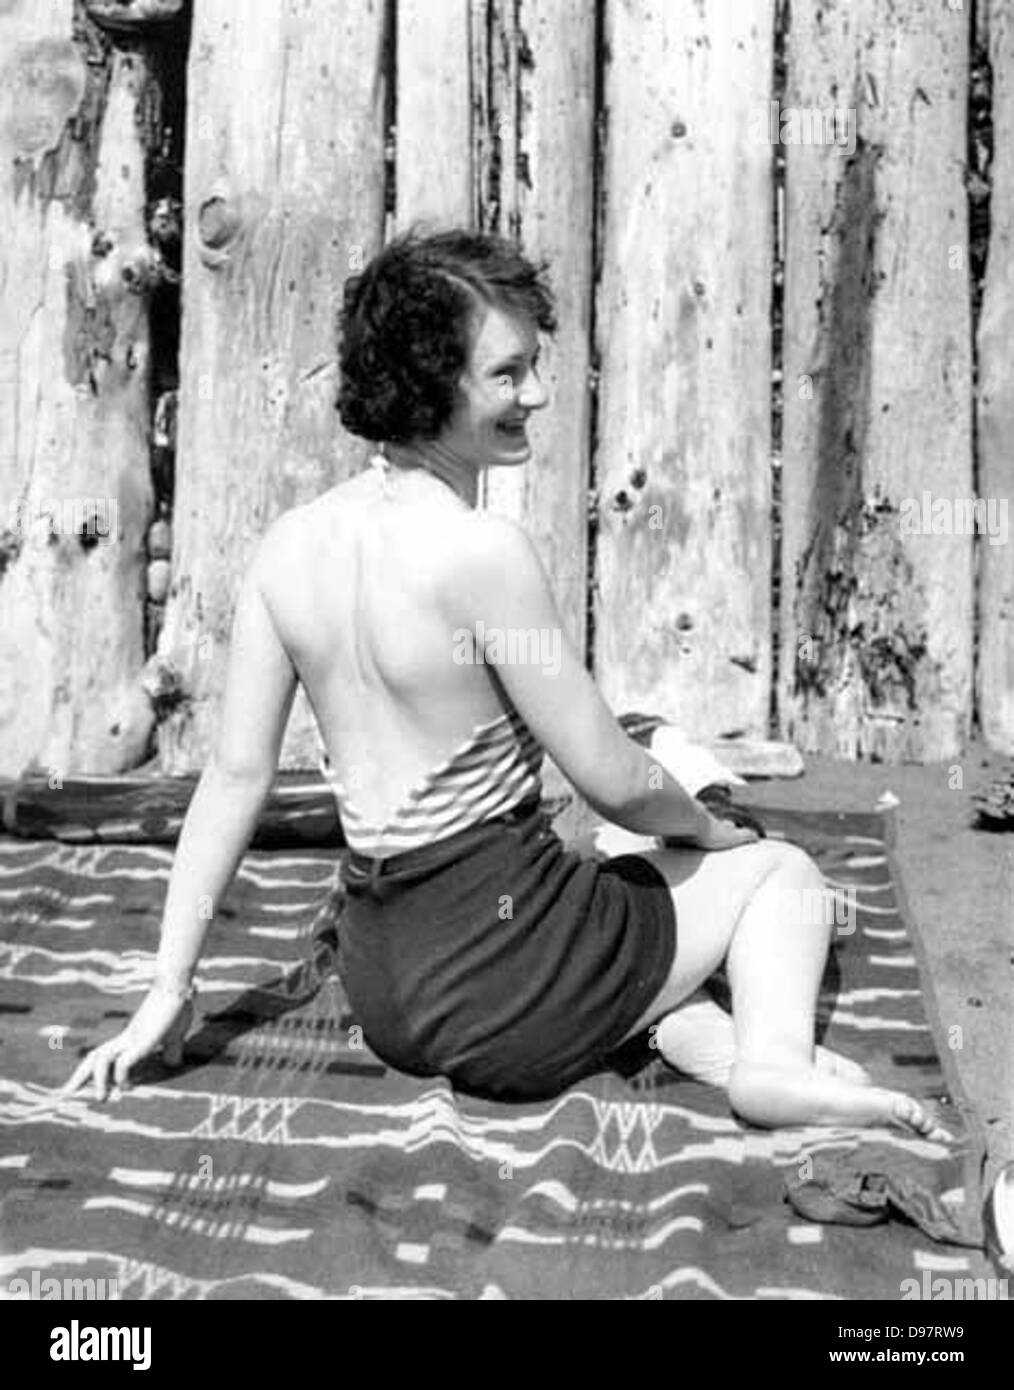 Donna in costume da bagno seduta su una coperta nella parte anteriore di una recinzione di registro, probabilmente stato di Washington Foto Stock